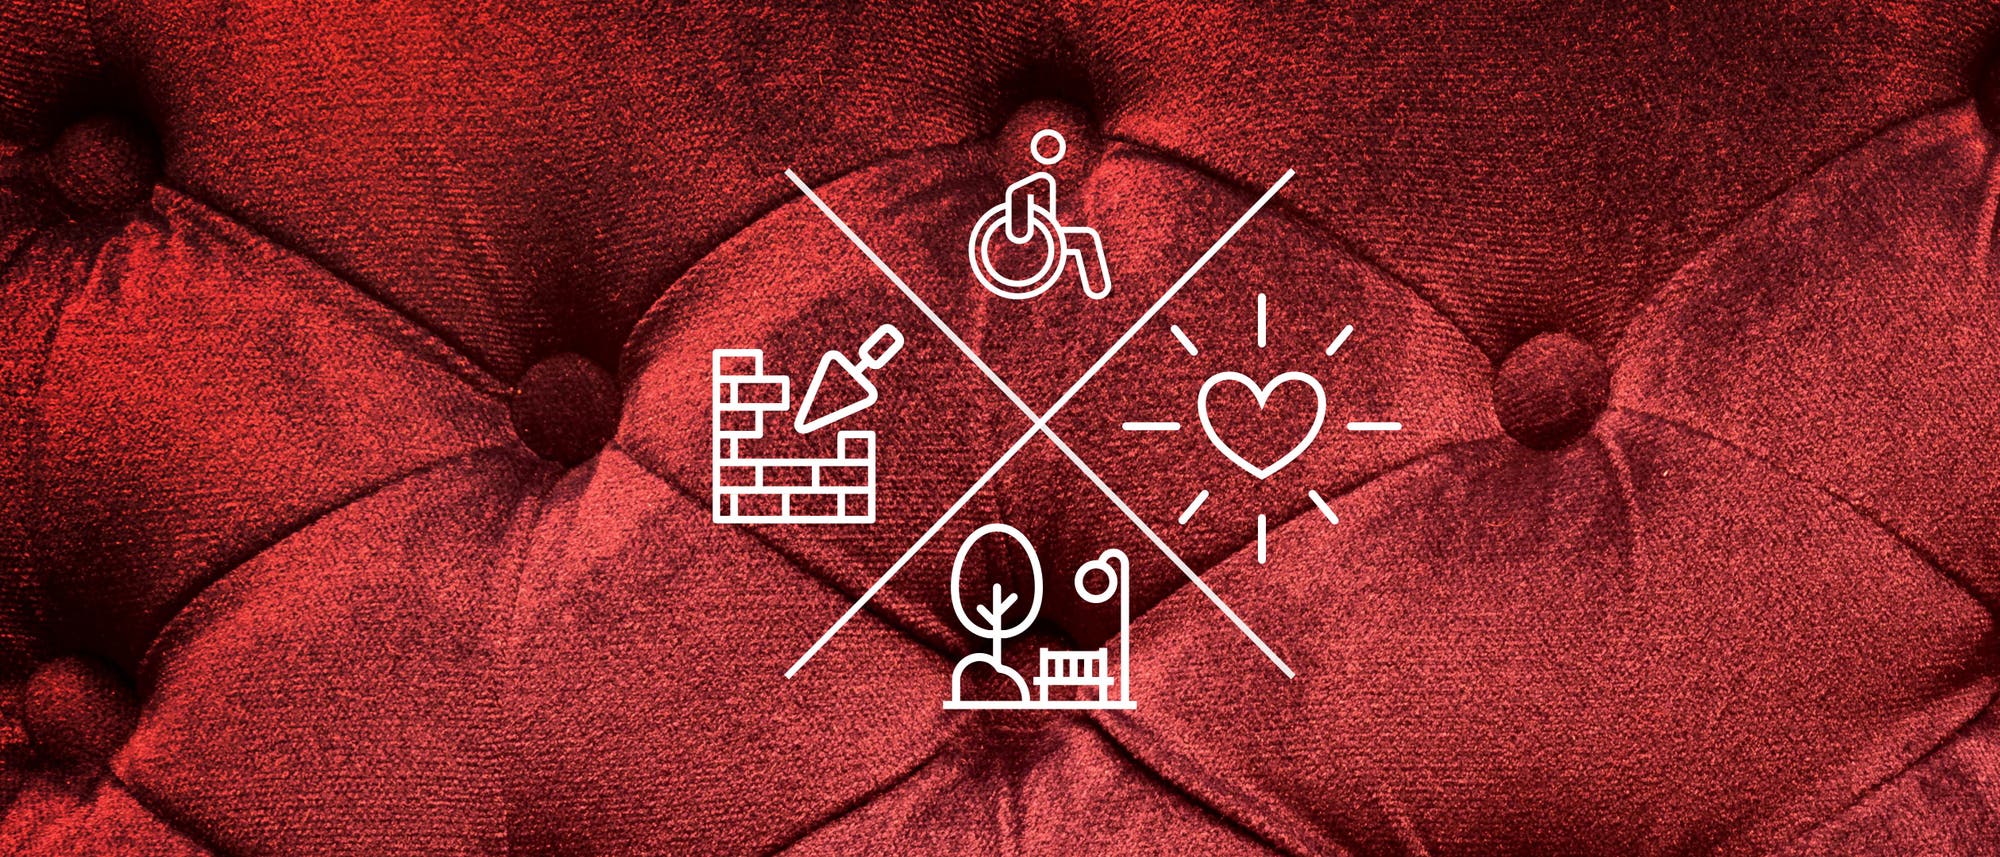 Symbole vor rotem Plüsch: Sanierungsarbeiten, Rollstuhl, Liebe, Parkbank